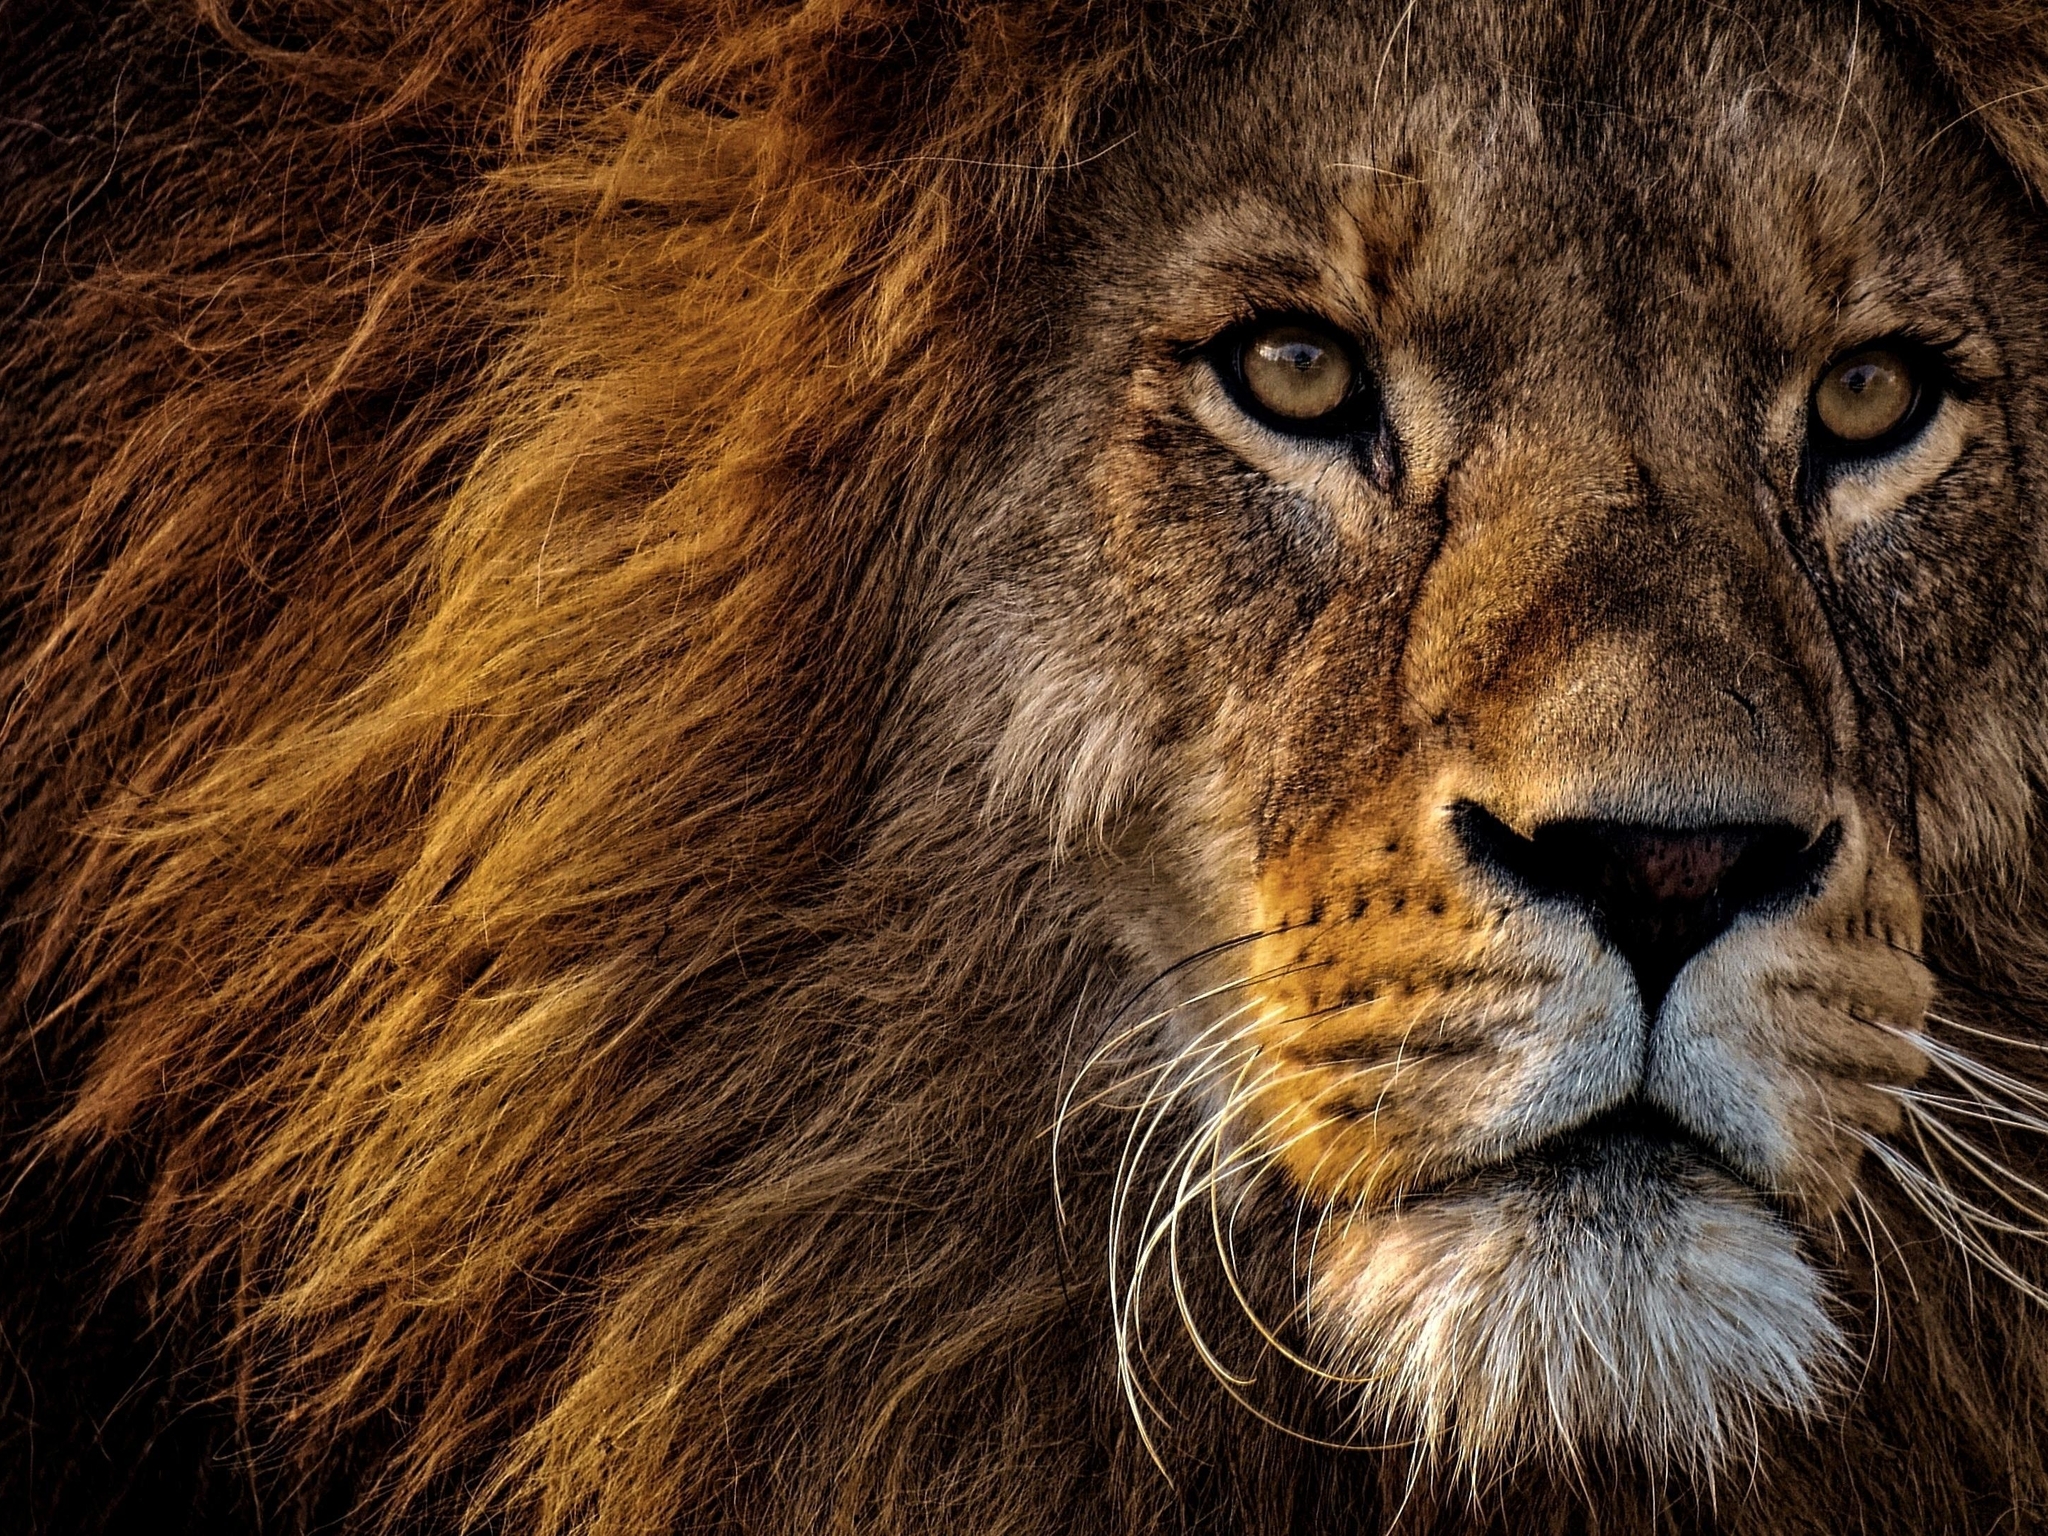 Картинка: Лев, король, царь зверей, морда, хищник, грива